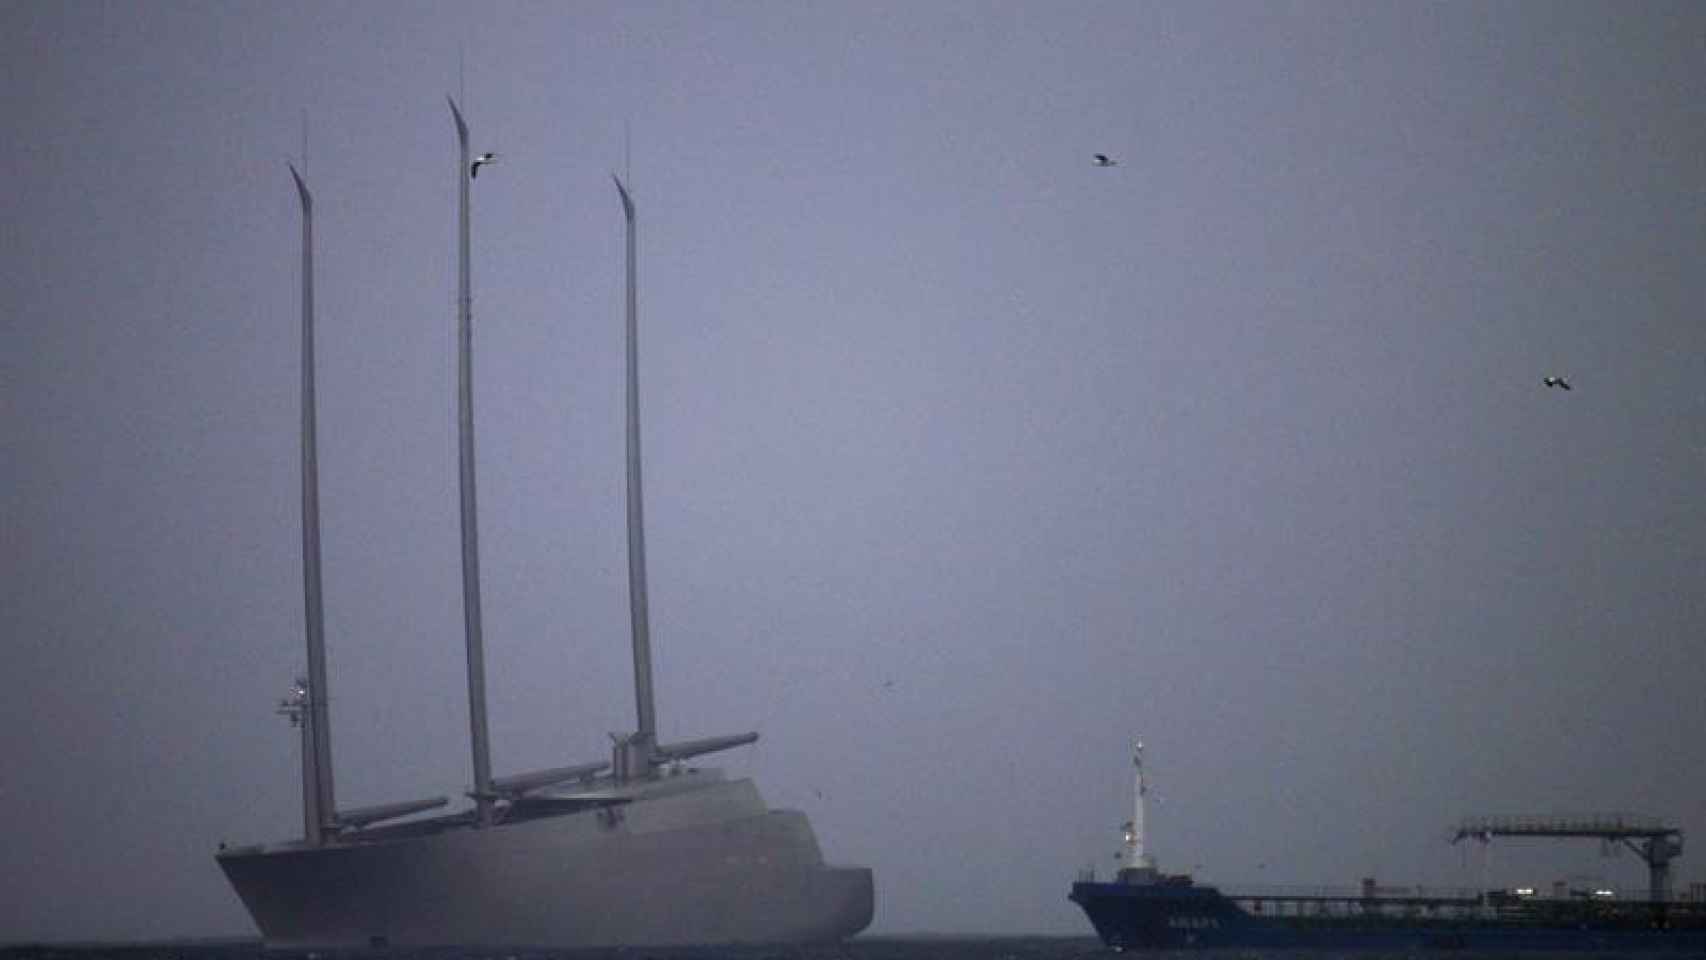 El yate a vela más grande del mundo, el Sailing Yatch Ase encuentra retenido desde hace varios días por las autoridades en el puerto de Gibraltar